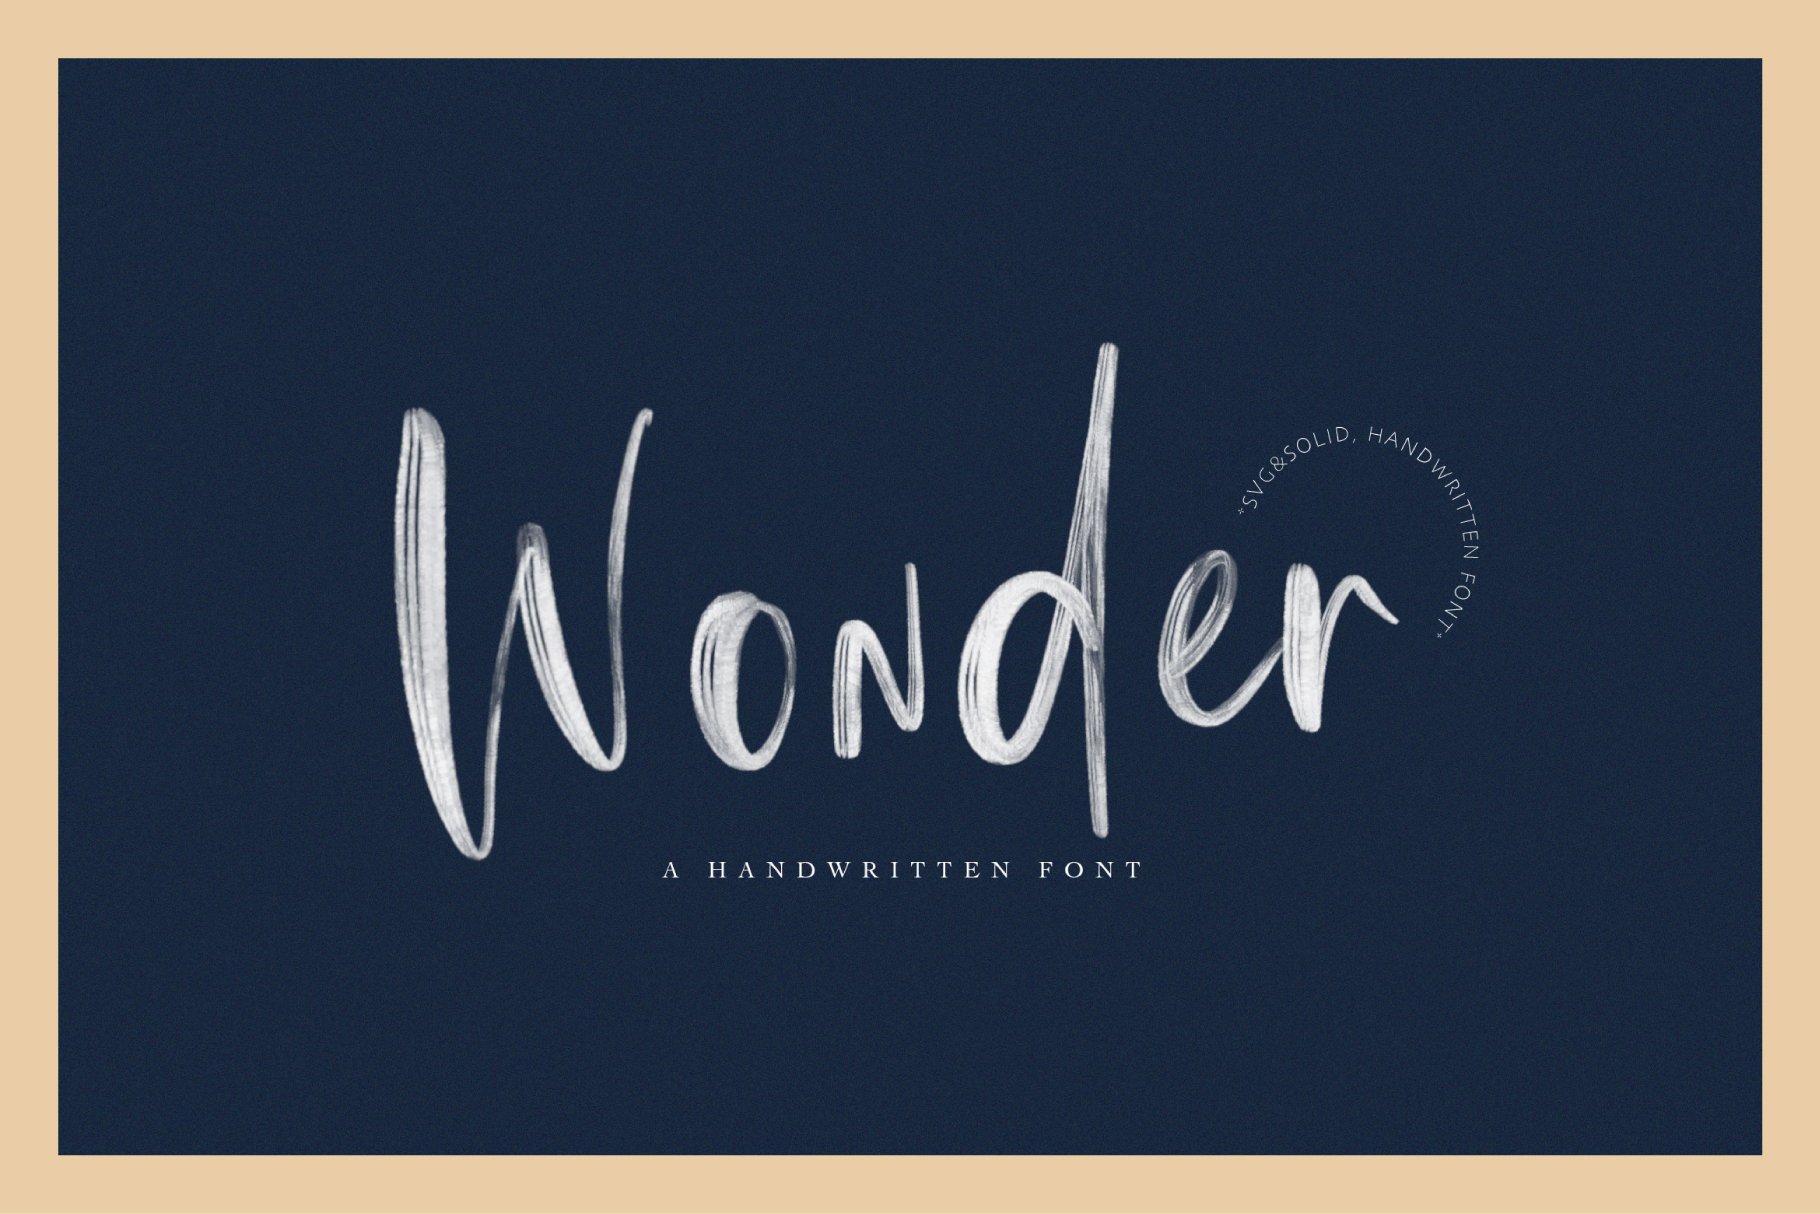 Wonder | SVG Font cover image.